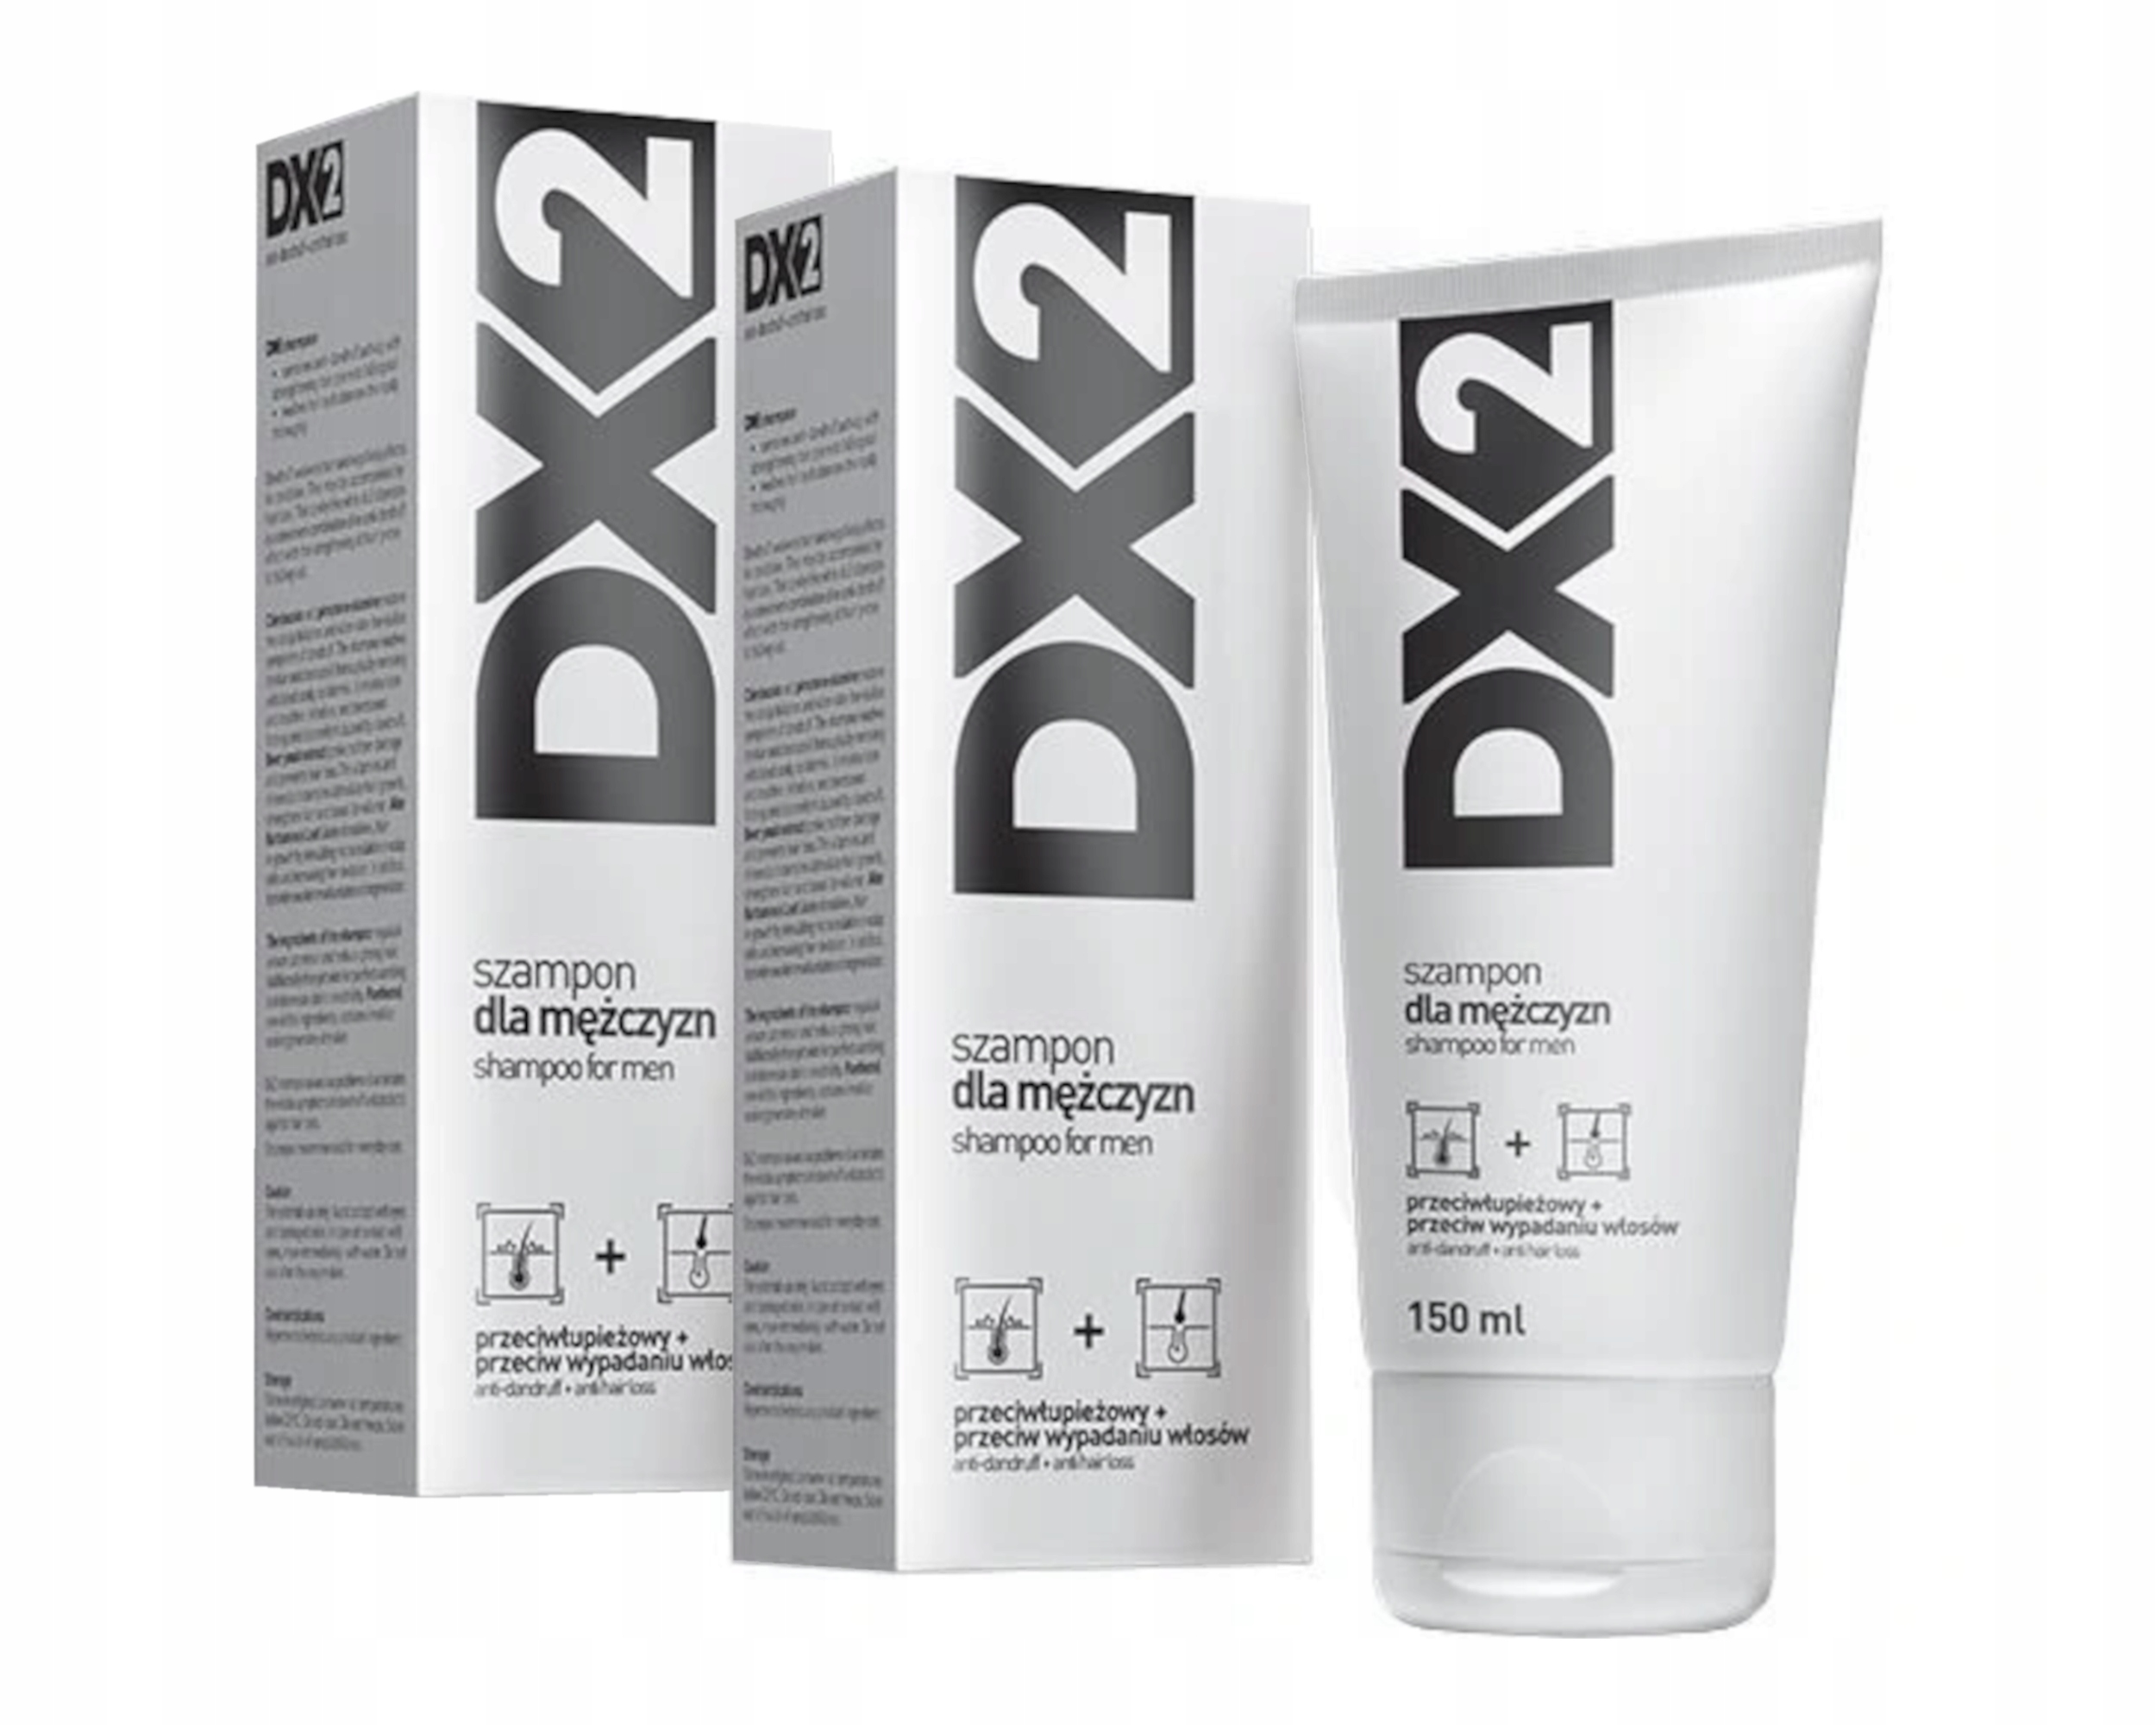 gdzie kupić szampon dx2